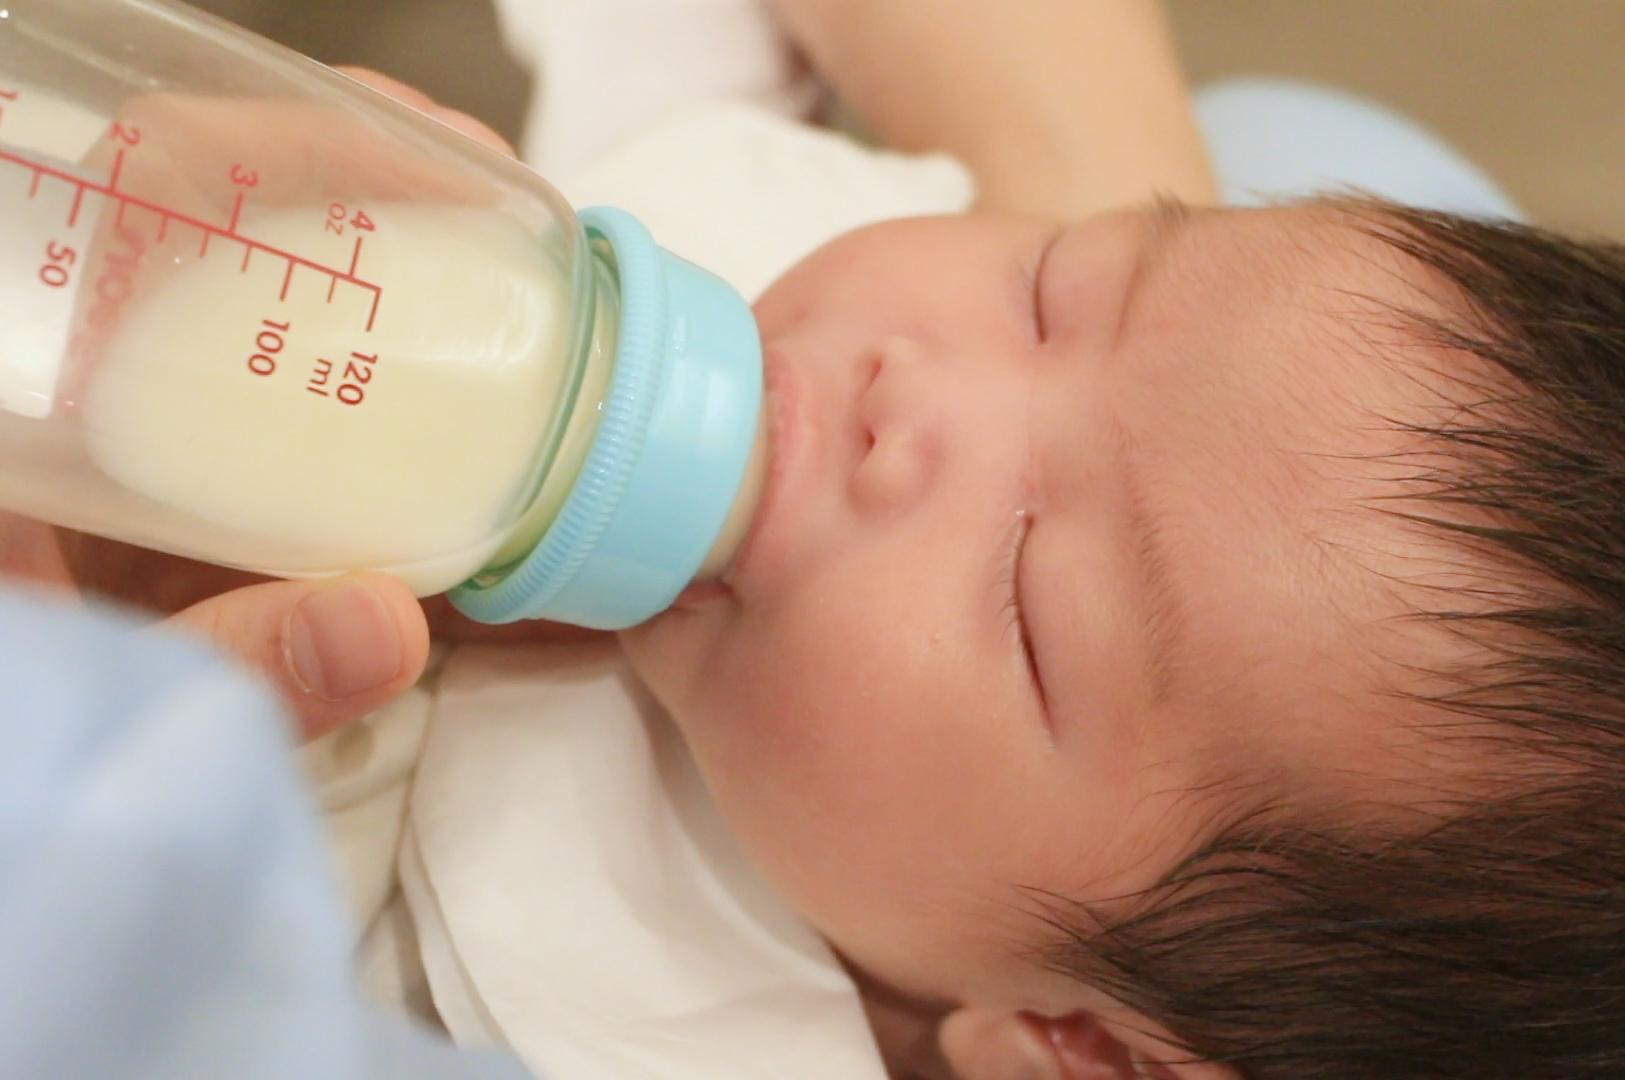 牛奶严重过敏可危及儿童生命_新闻频道_央视网(cctv.com)